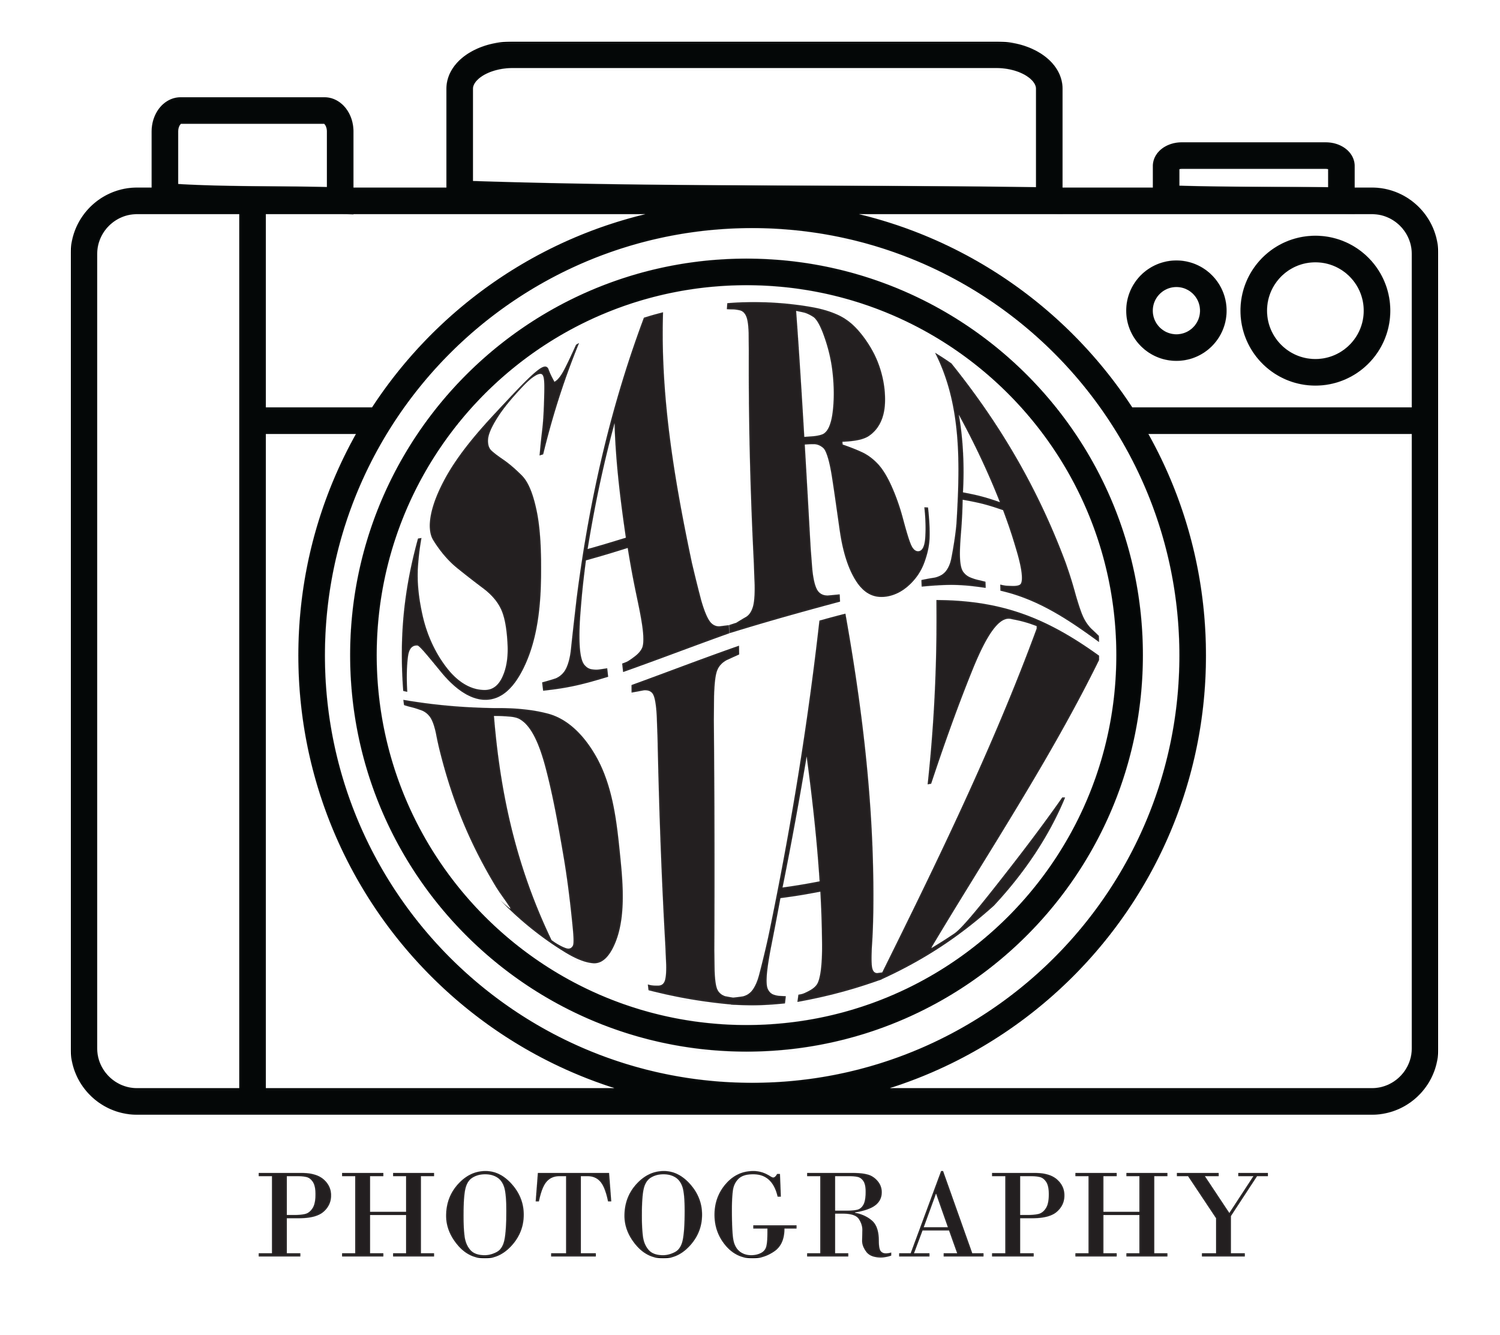 Sara Diaz Photography